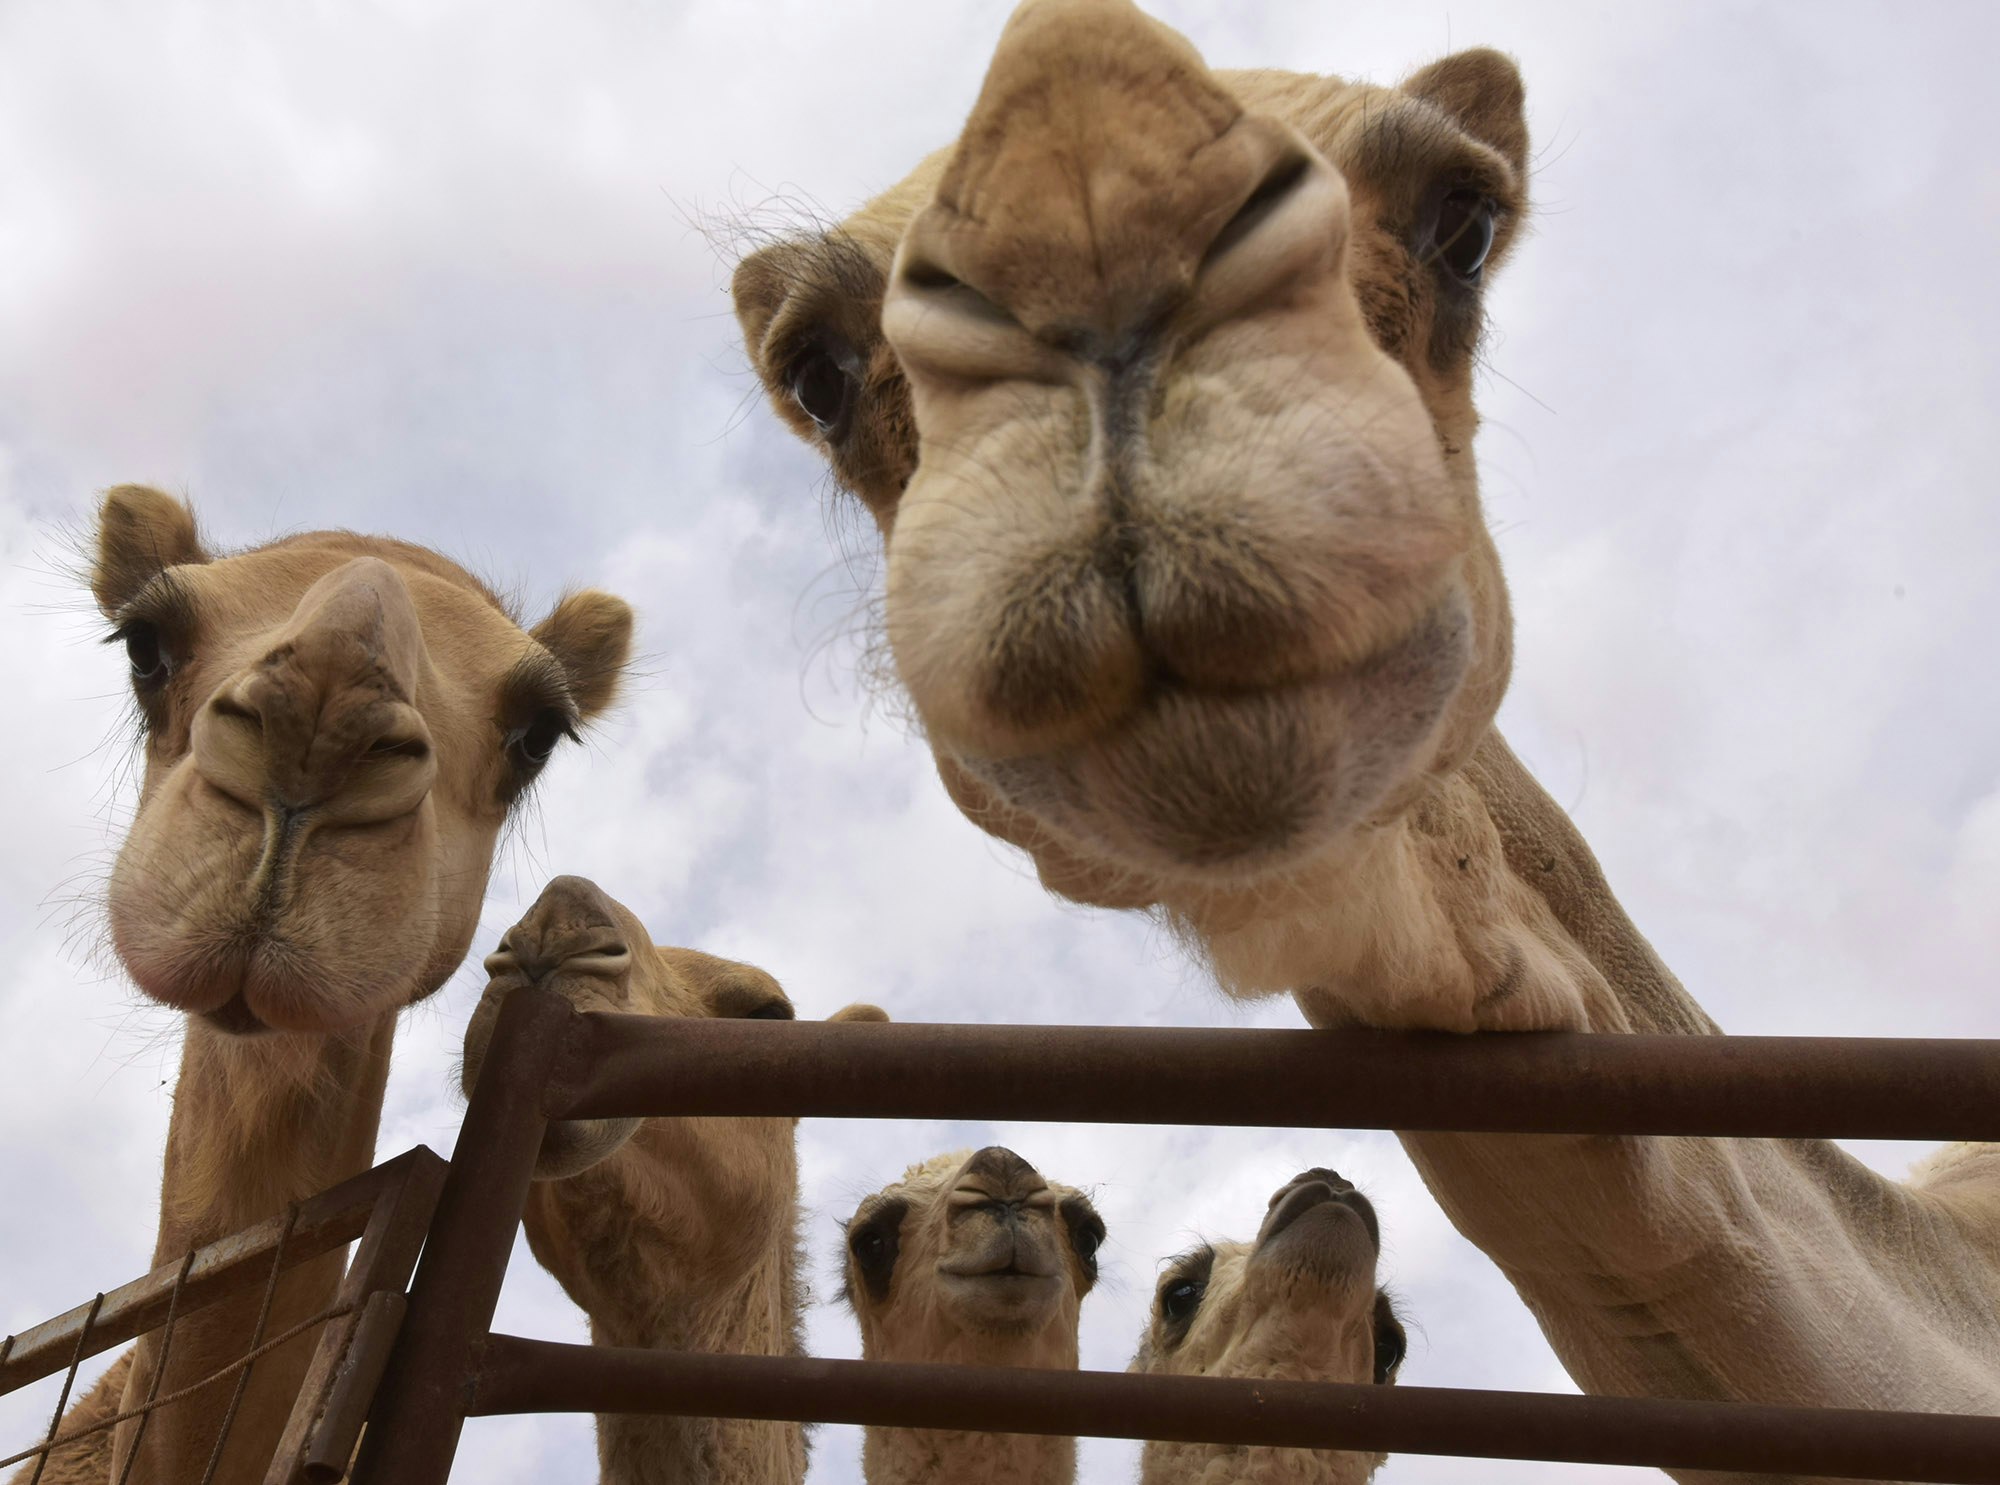 Travel News - LP1 Camel closeup